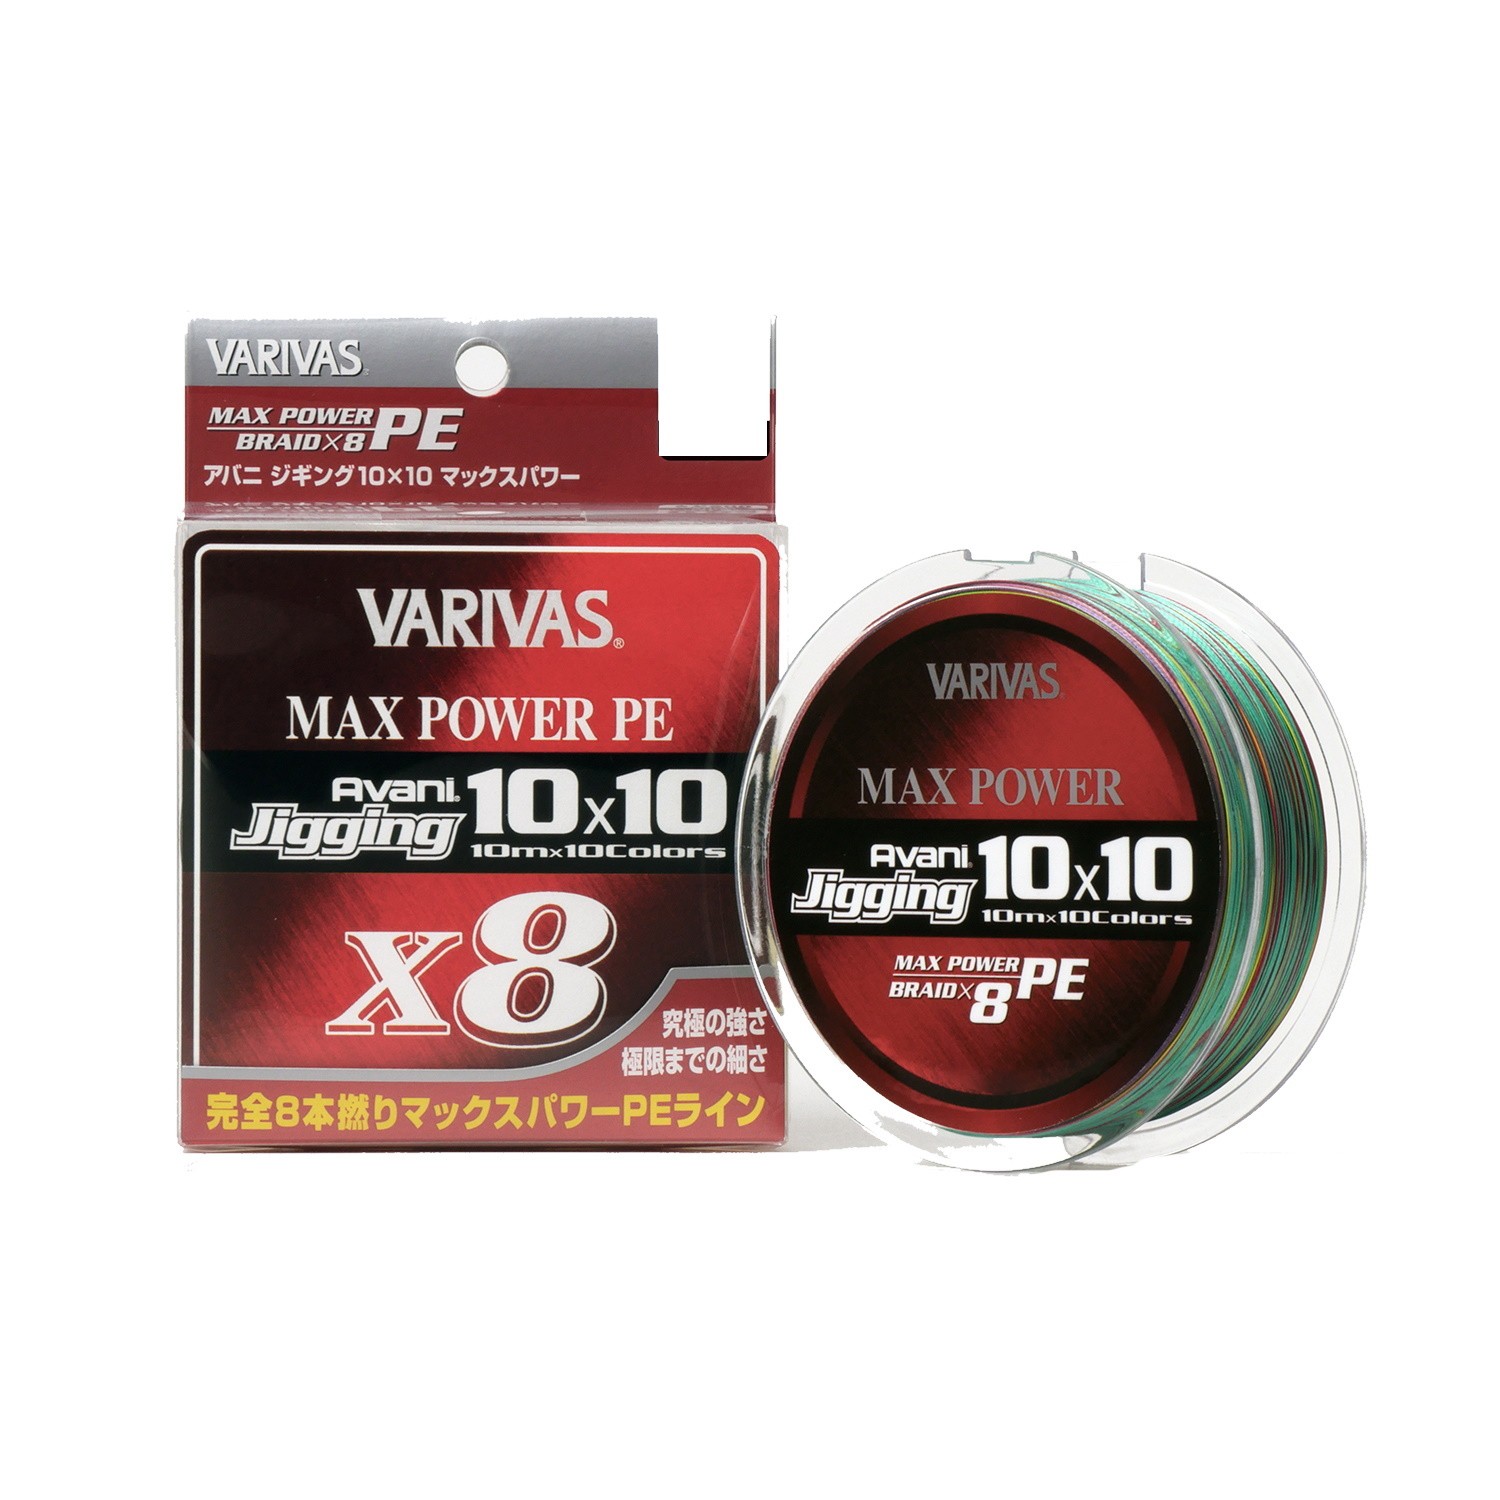 Шнур Varivas Avani Jigging 10x10 Max Power PE X8 200м PE 2.0 - фото 1